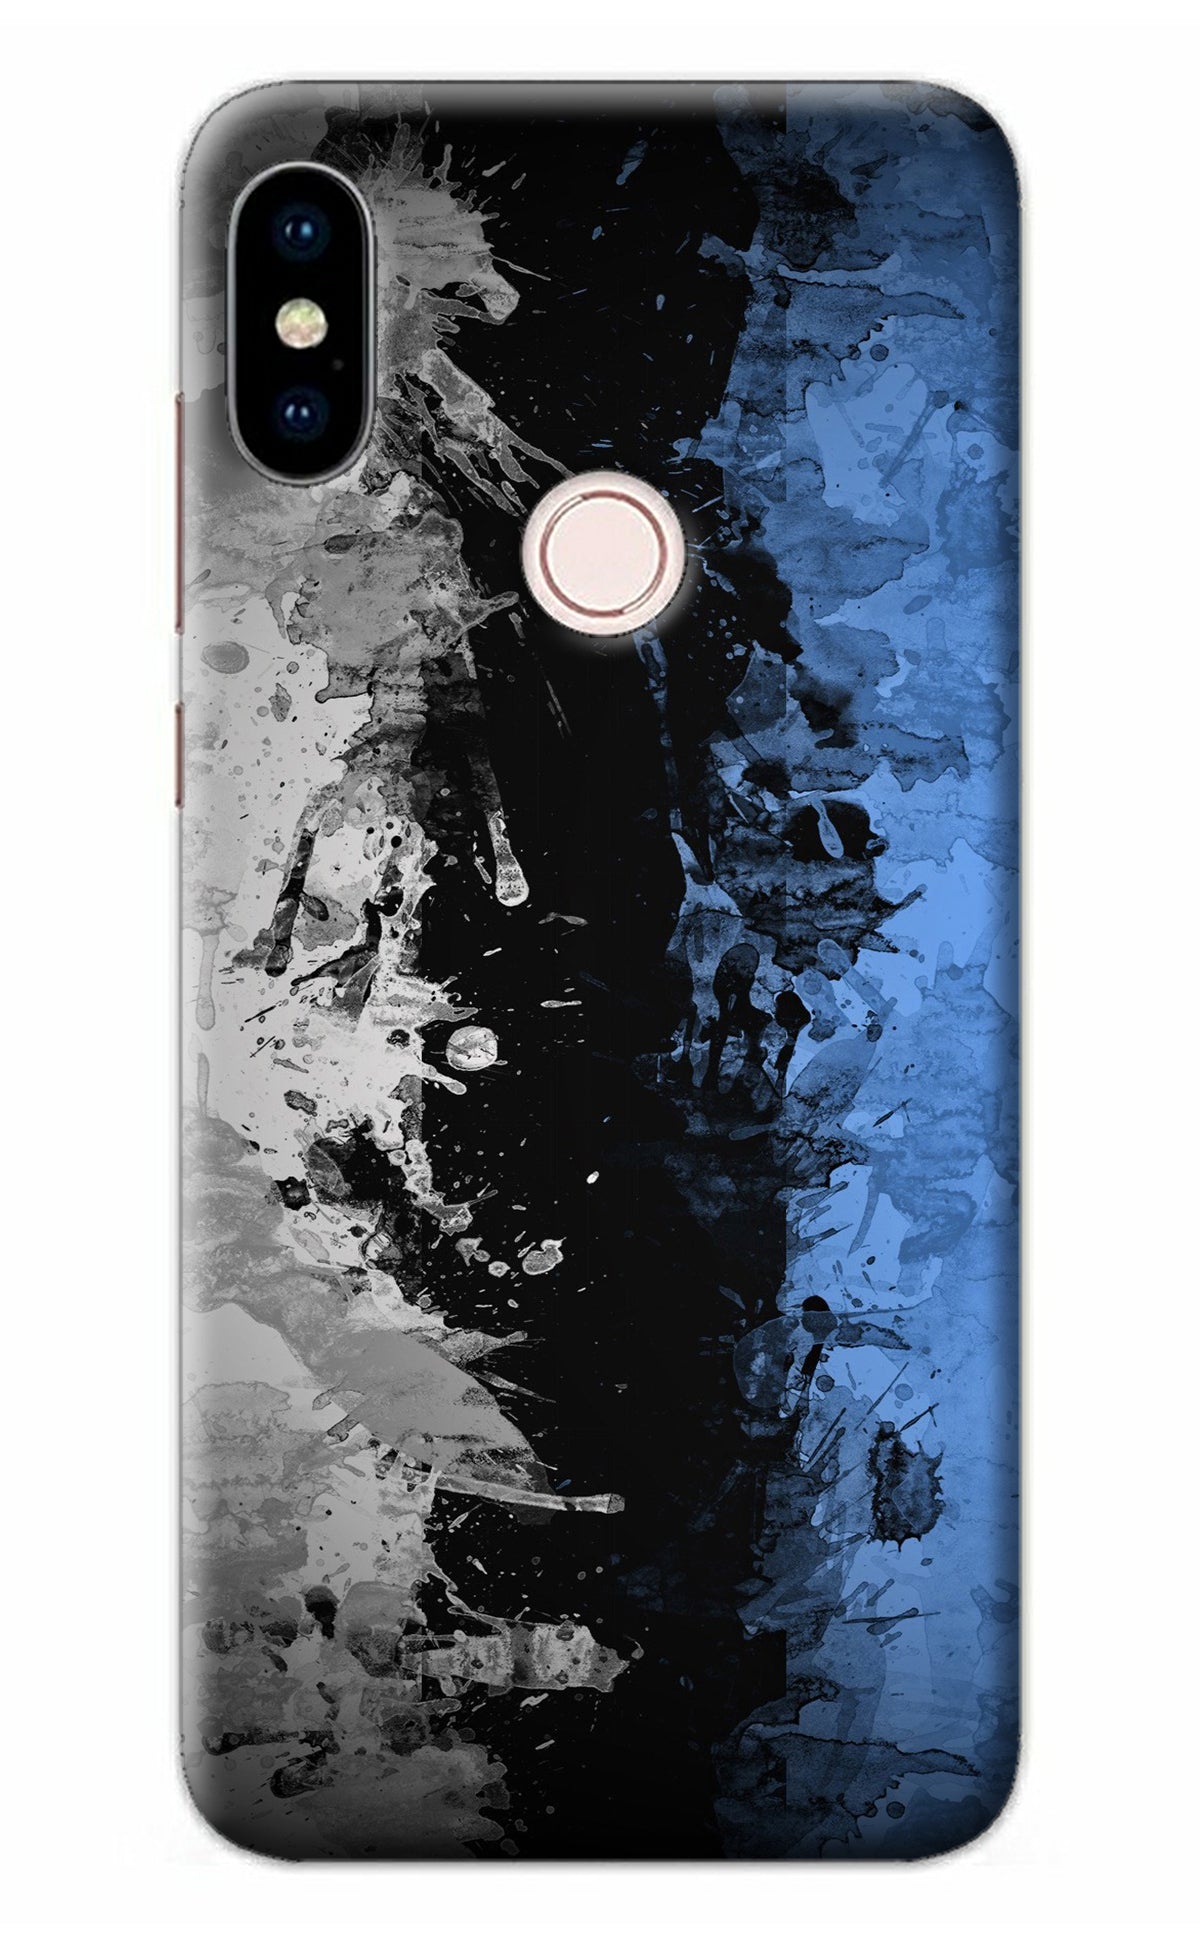 Artistic Design Redmi Note 5 Pro Back Cover